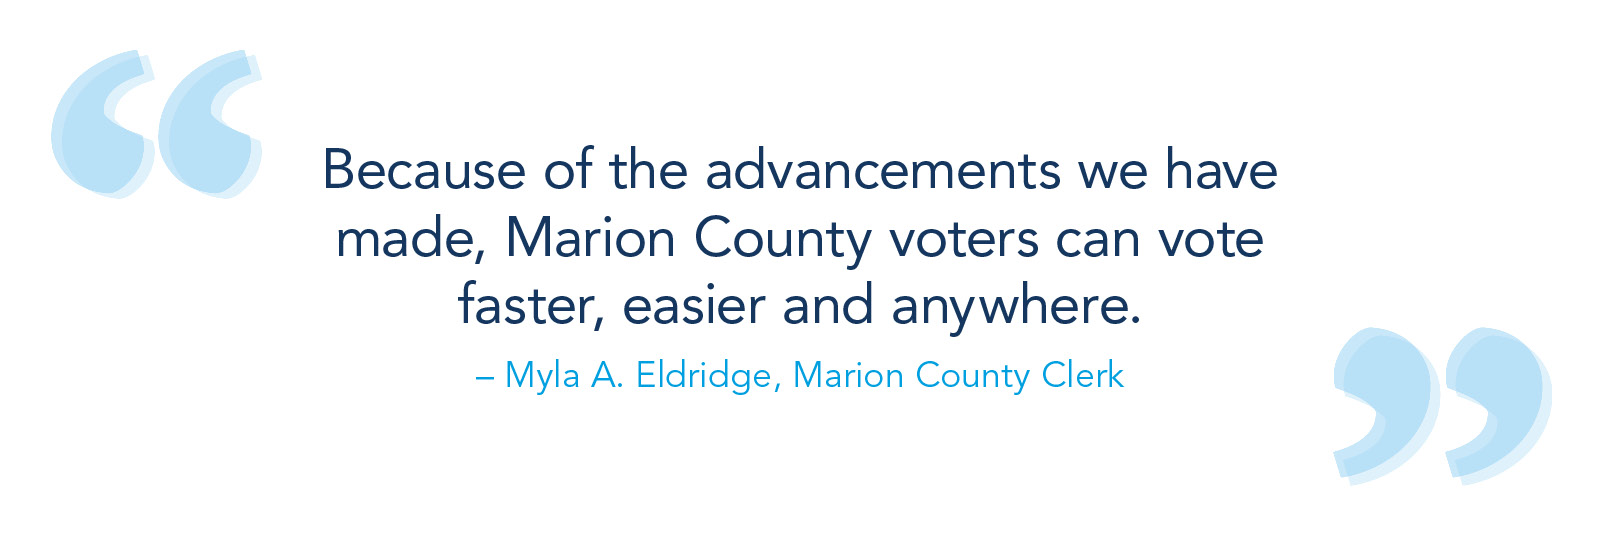 由于我们取得的进步，马里昂县的选民可以更快、更容易、在任何地方投票。-玛拉·a·埃尔德里奇，马里昂县职员